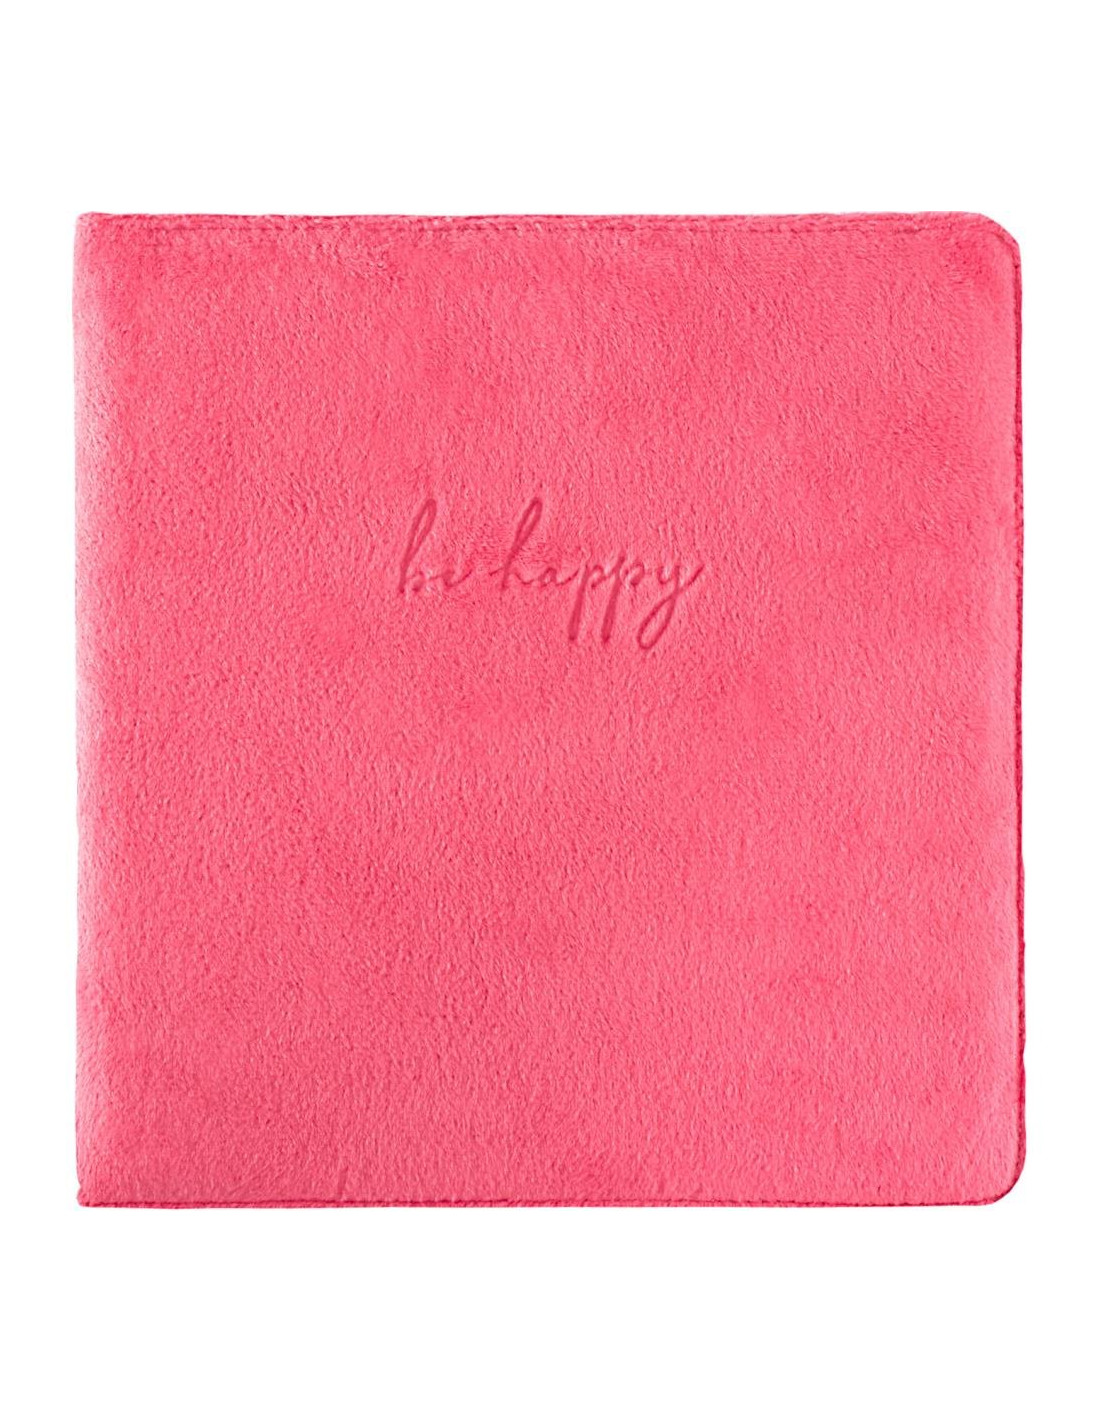 Álbum Cotton pink pequeño Webster